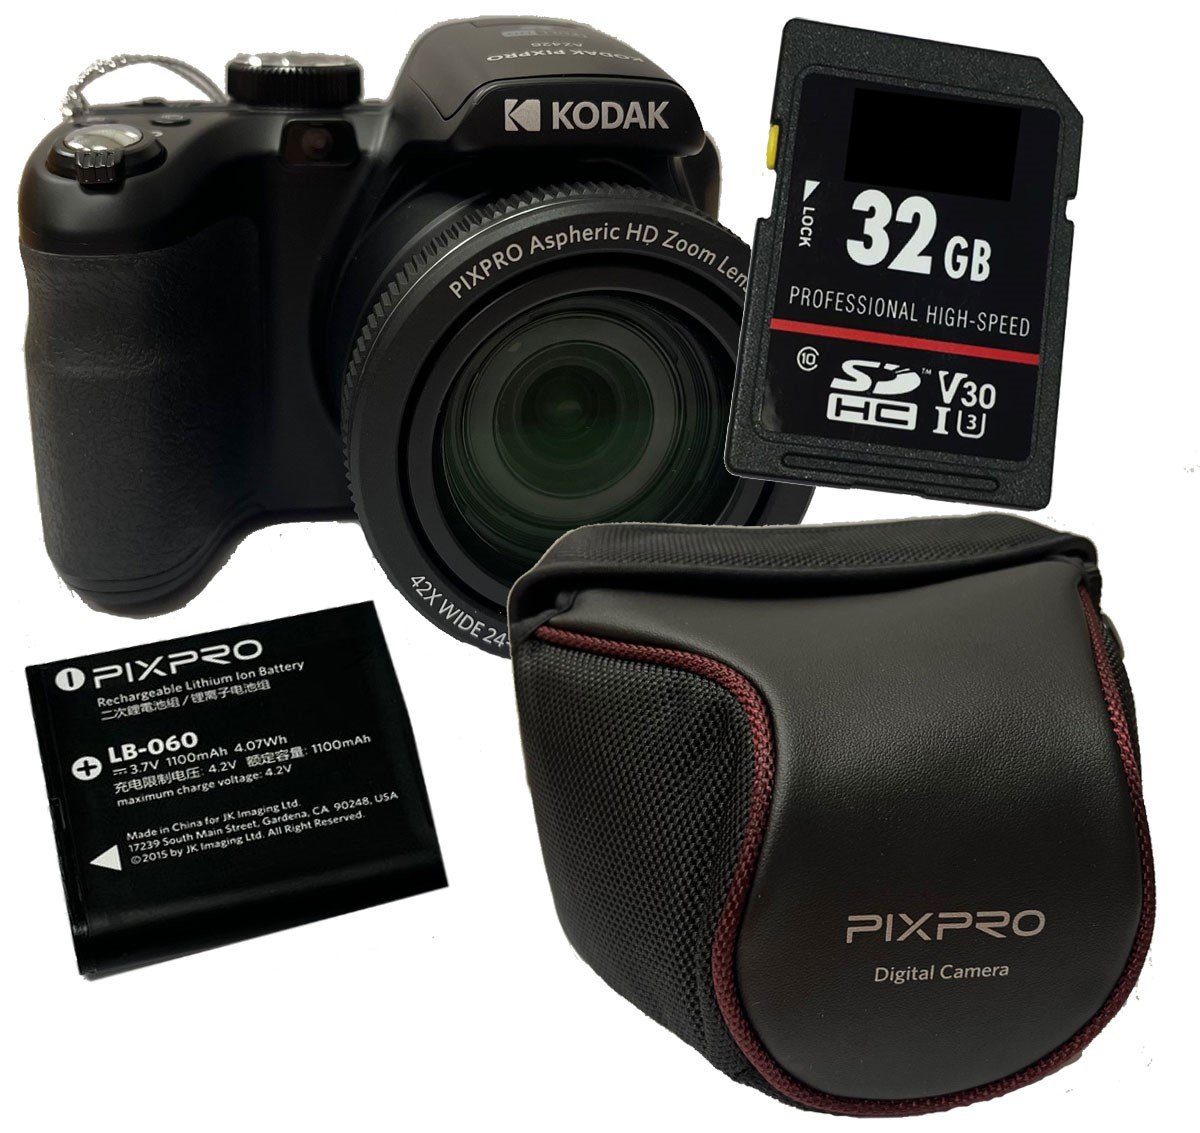 schwarz Kodak Set Kompaktkamera Digitalkamera AZ426 PixPro